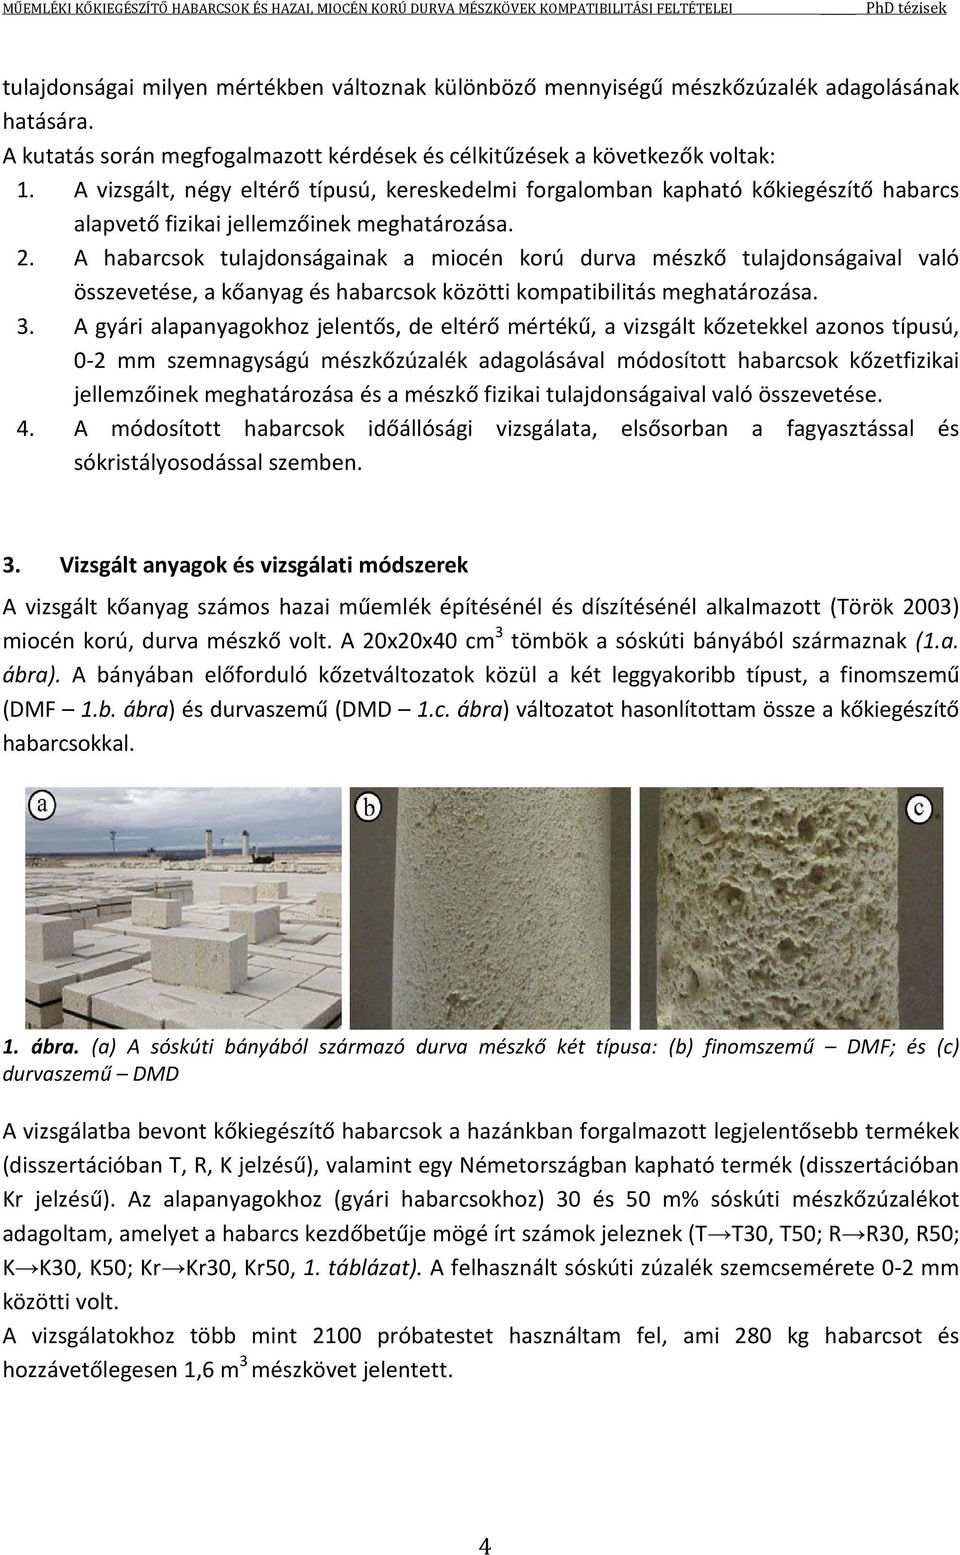 A habarcsok tulajdonságainak a miocén korú durva mészkő tulajdonságaival való összevetése, a kőanyag és habarcsok közötti kompatibilitás meghatározása. 3.